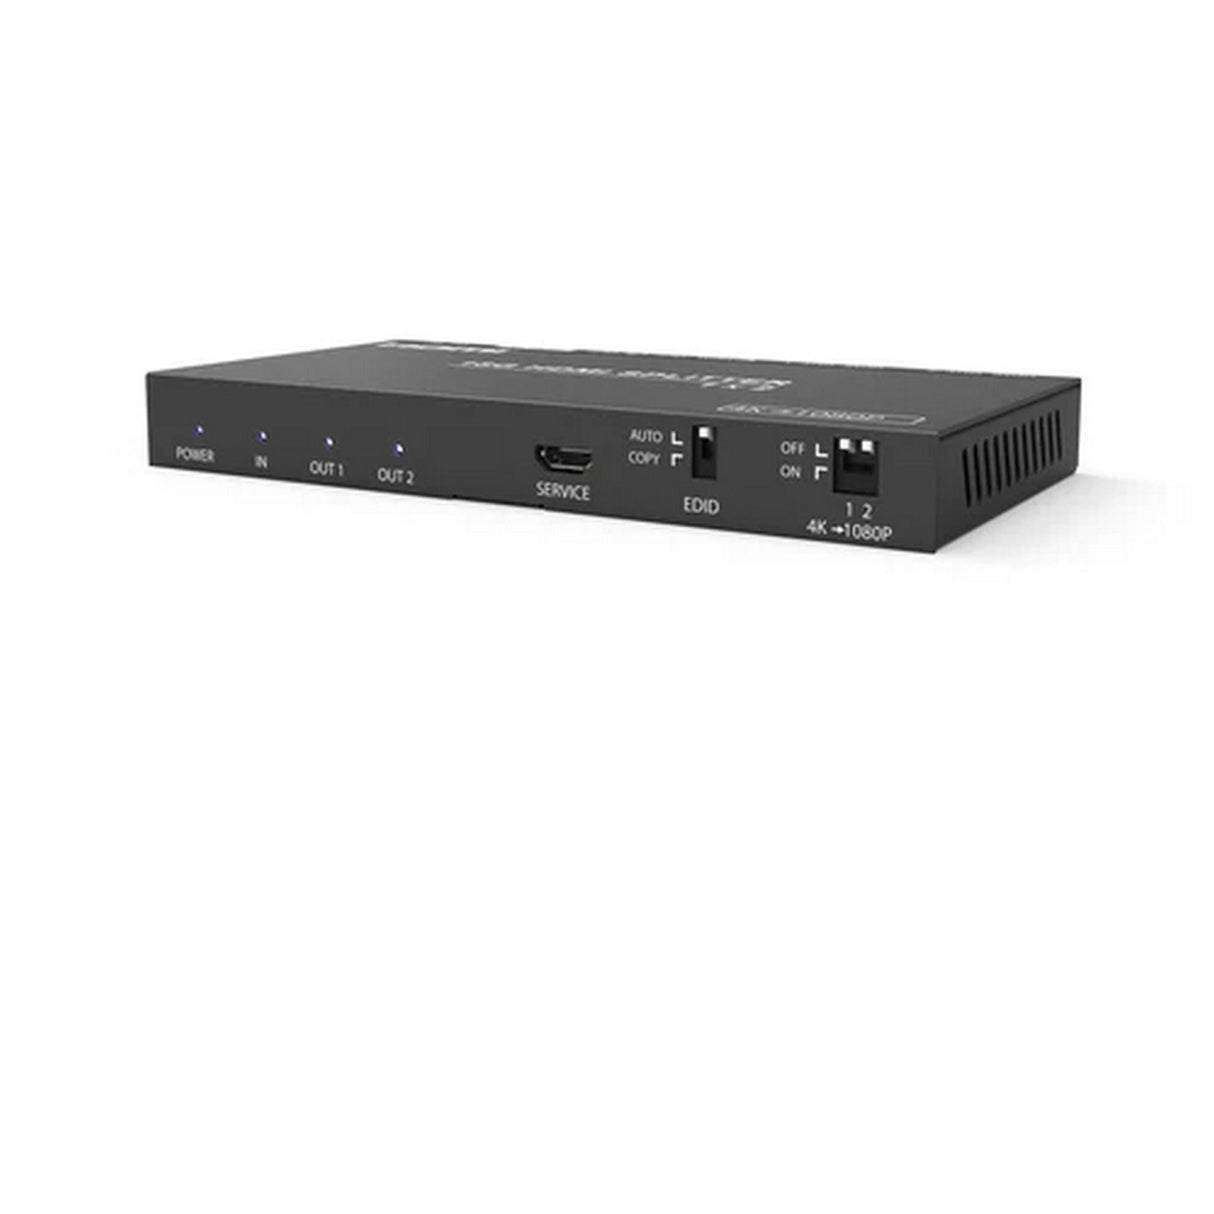 DVDO DVDO-Splitter-12-SE 4K HDMI 1-2 Splitter with Scaler/Audio Extract